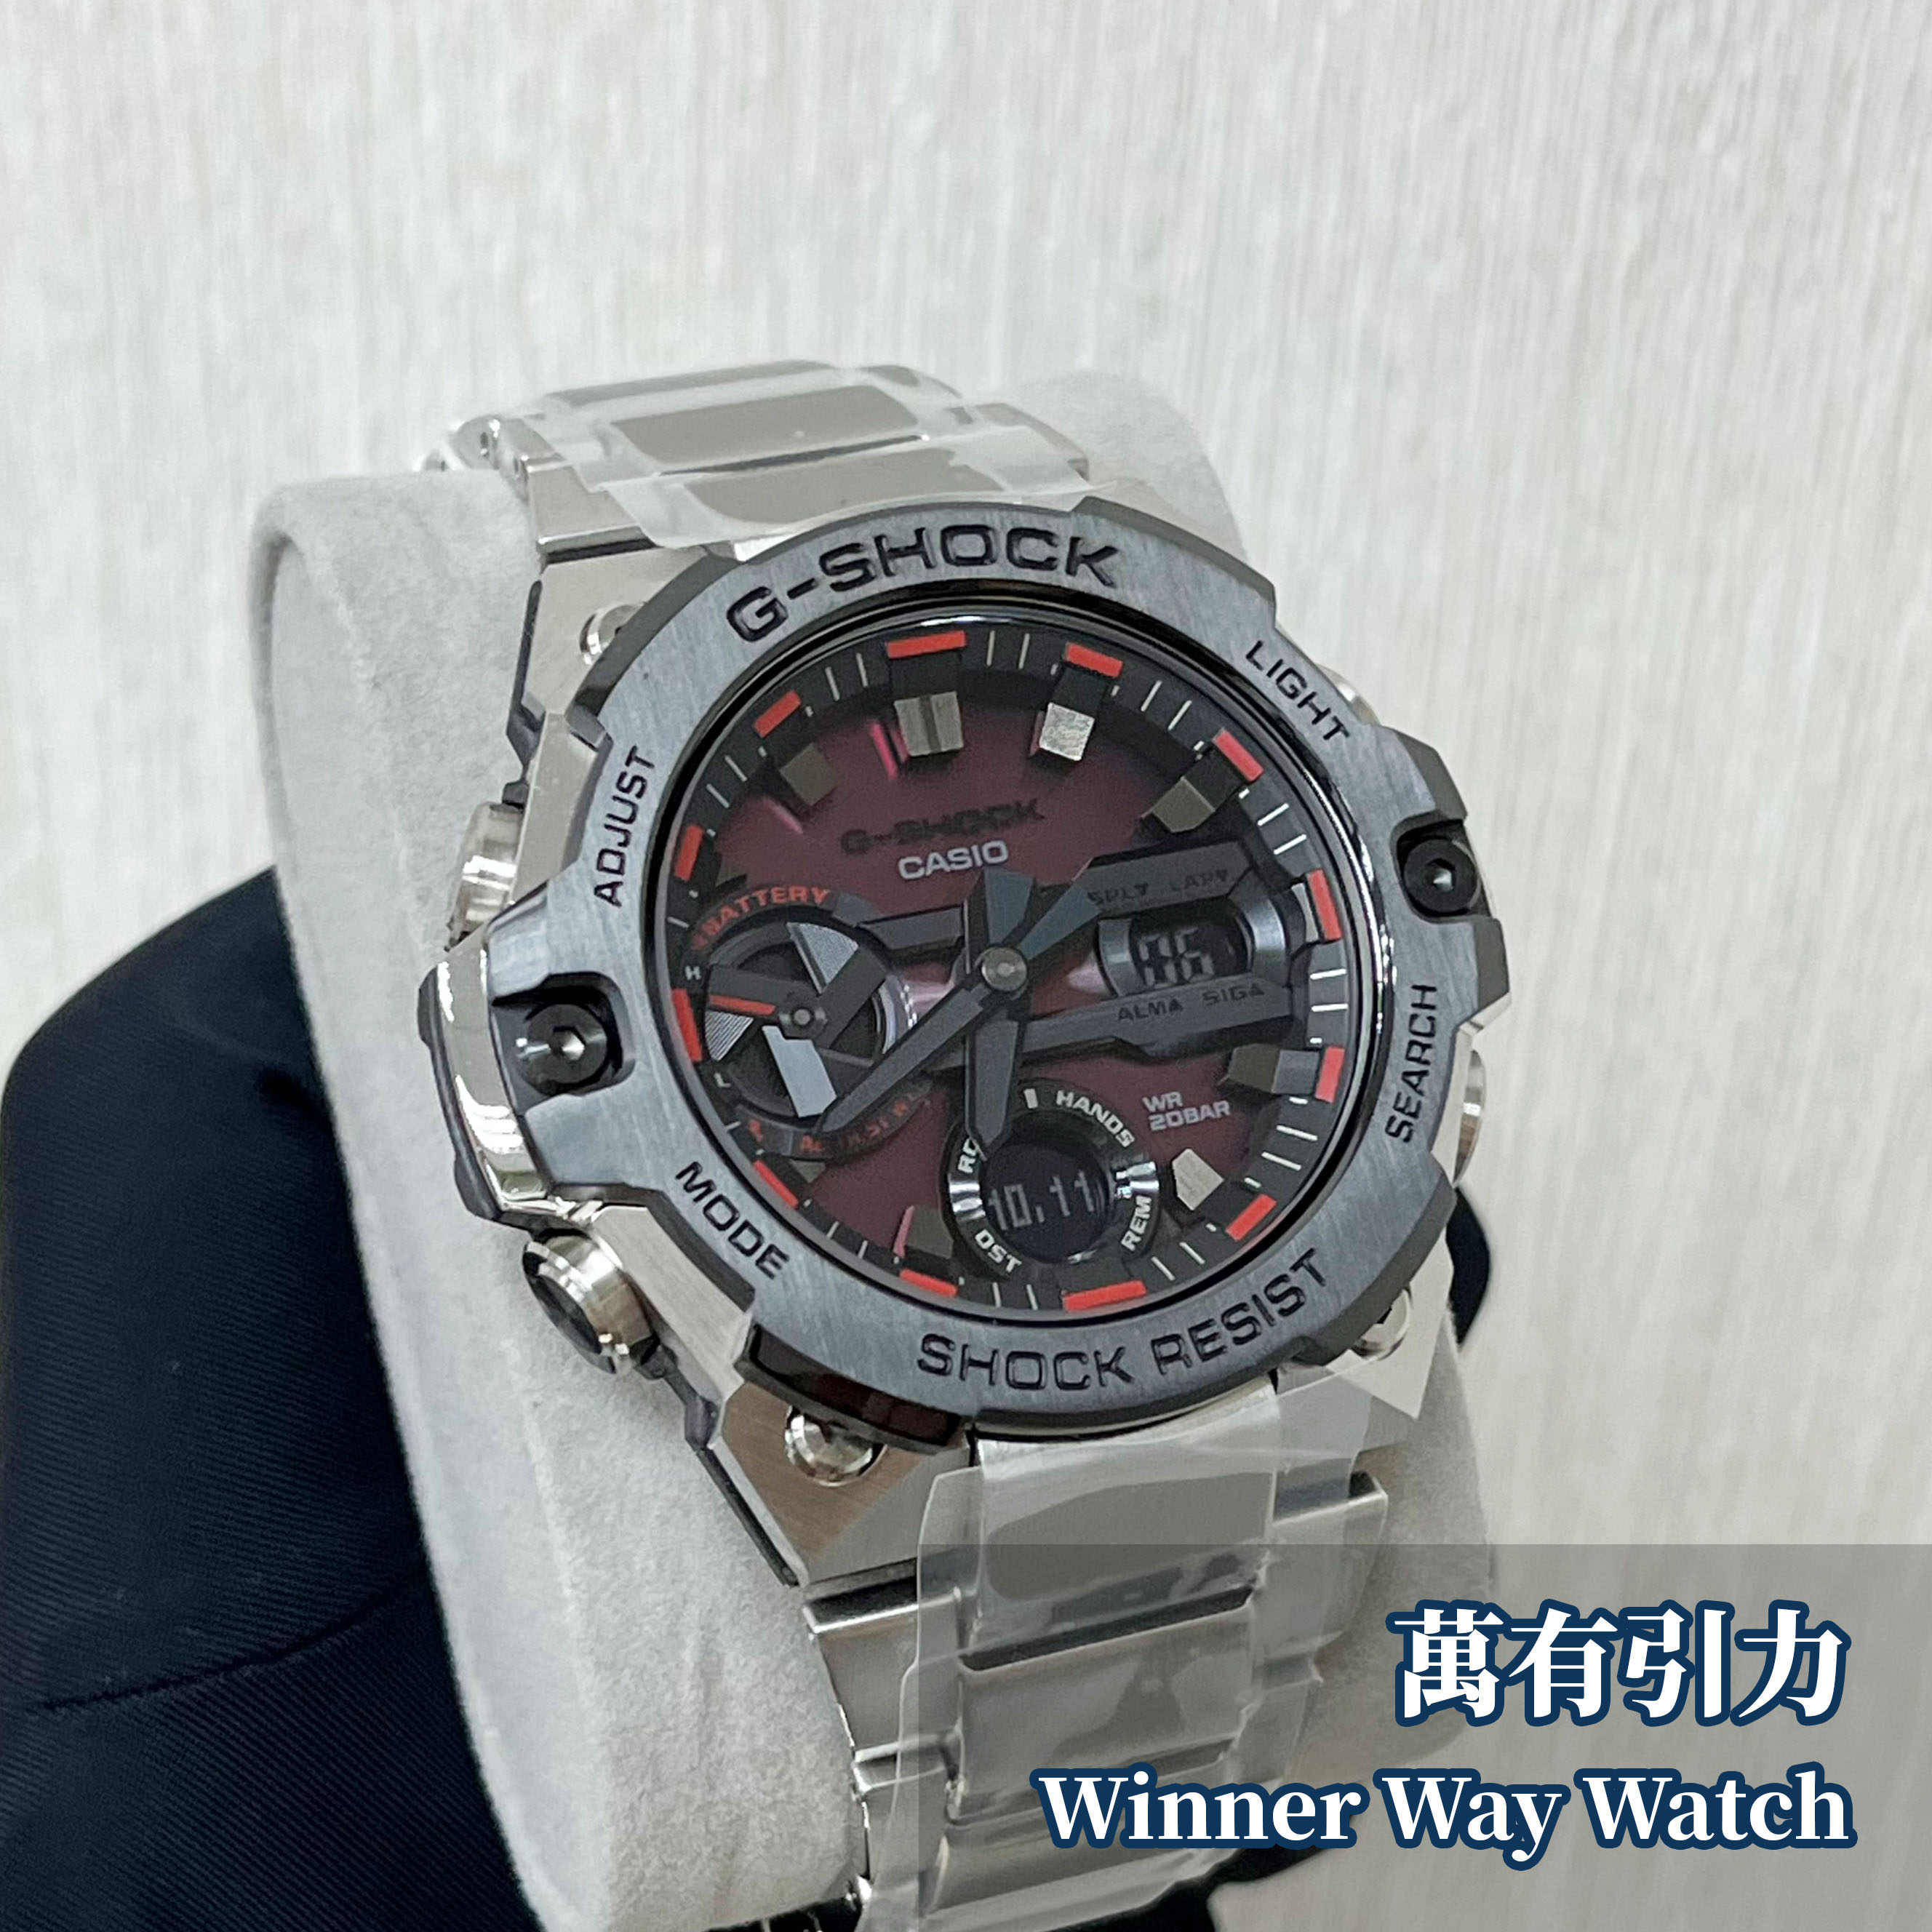 Casio G-Shock GST-B400AD-1A4 | Winner Way Watch